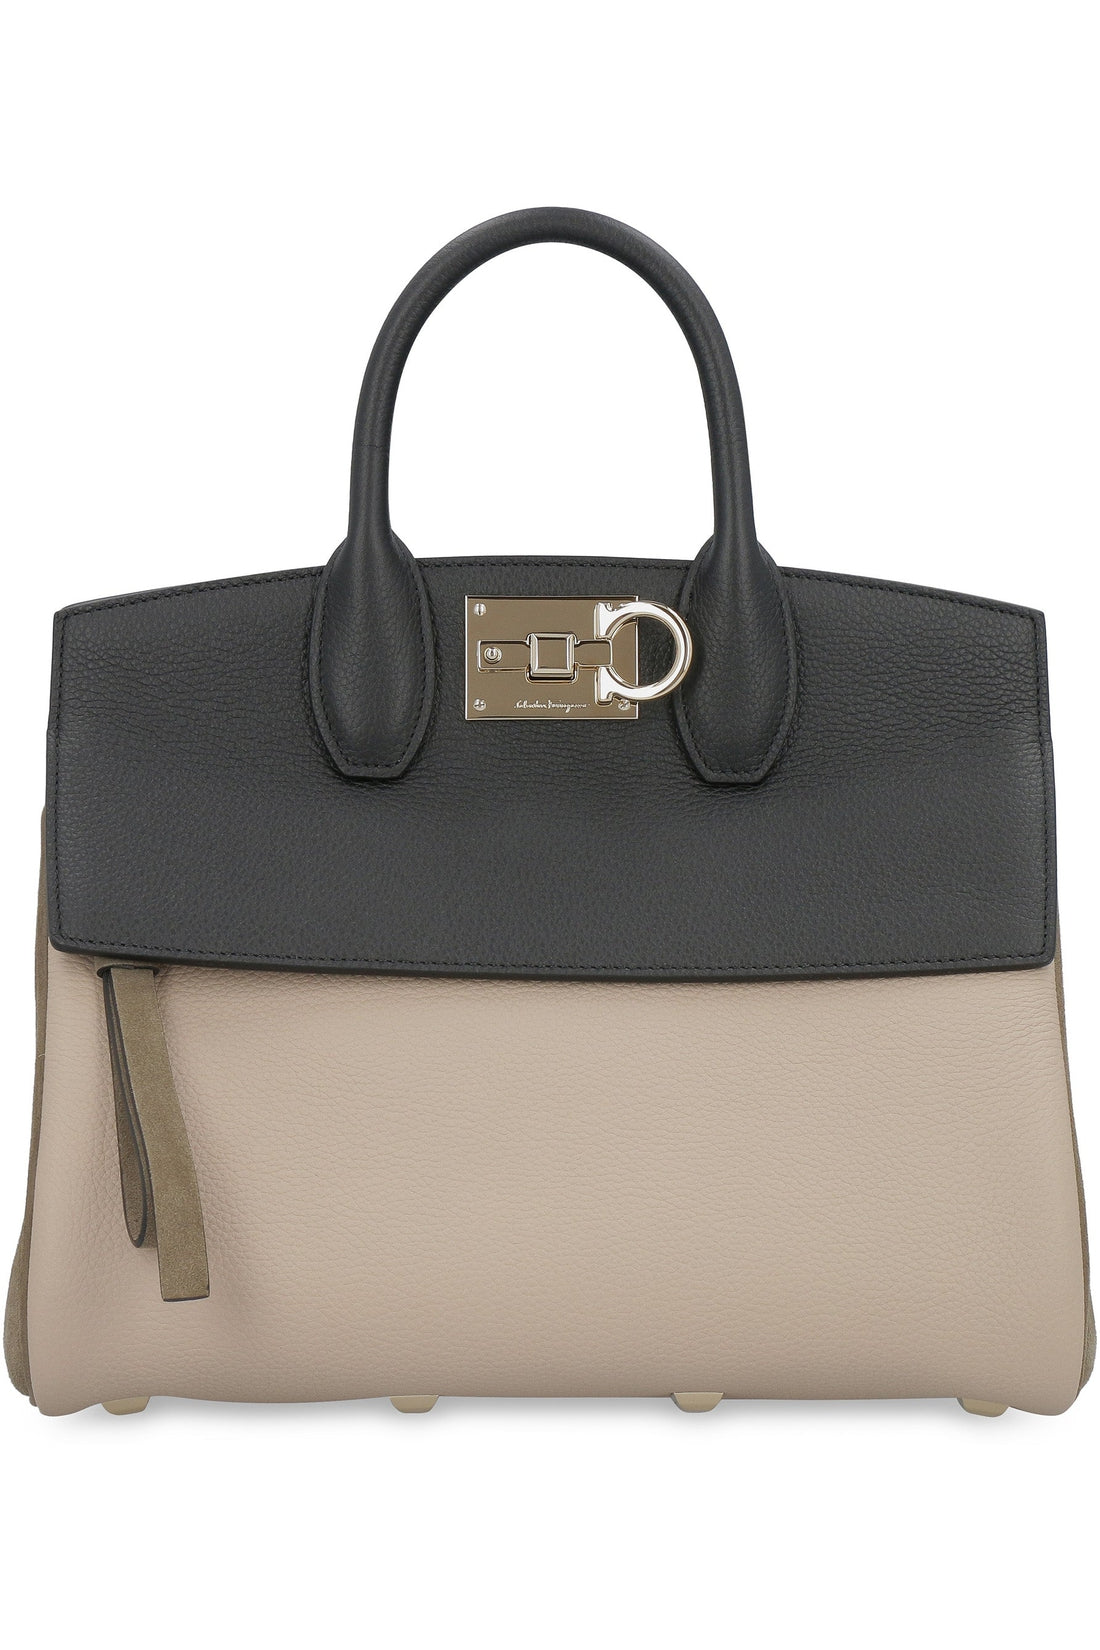 FERRAGAMO-OUTLET-SALE-Studio leather handbag-ARCHIVIST